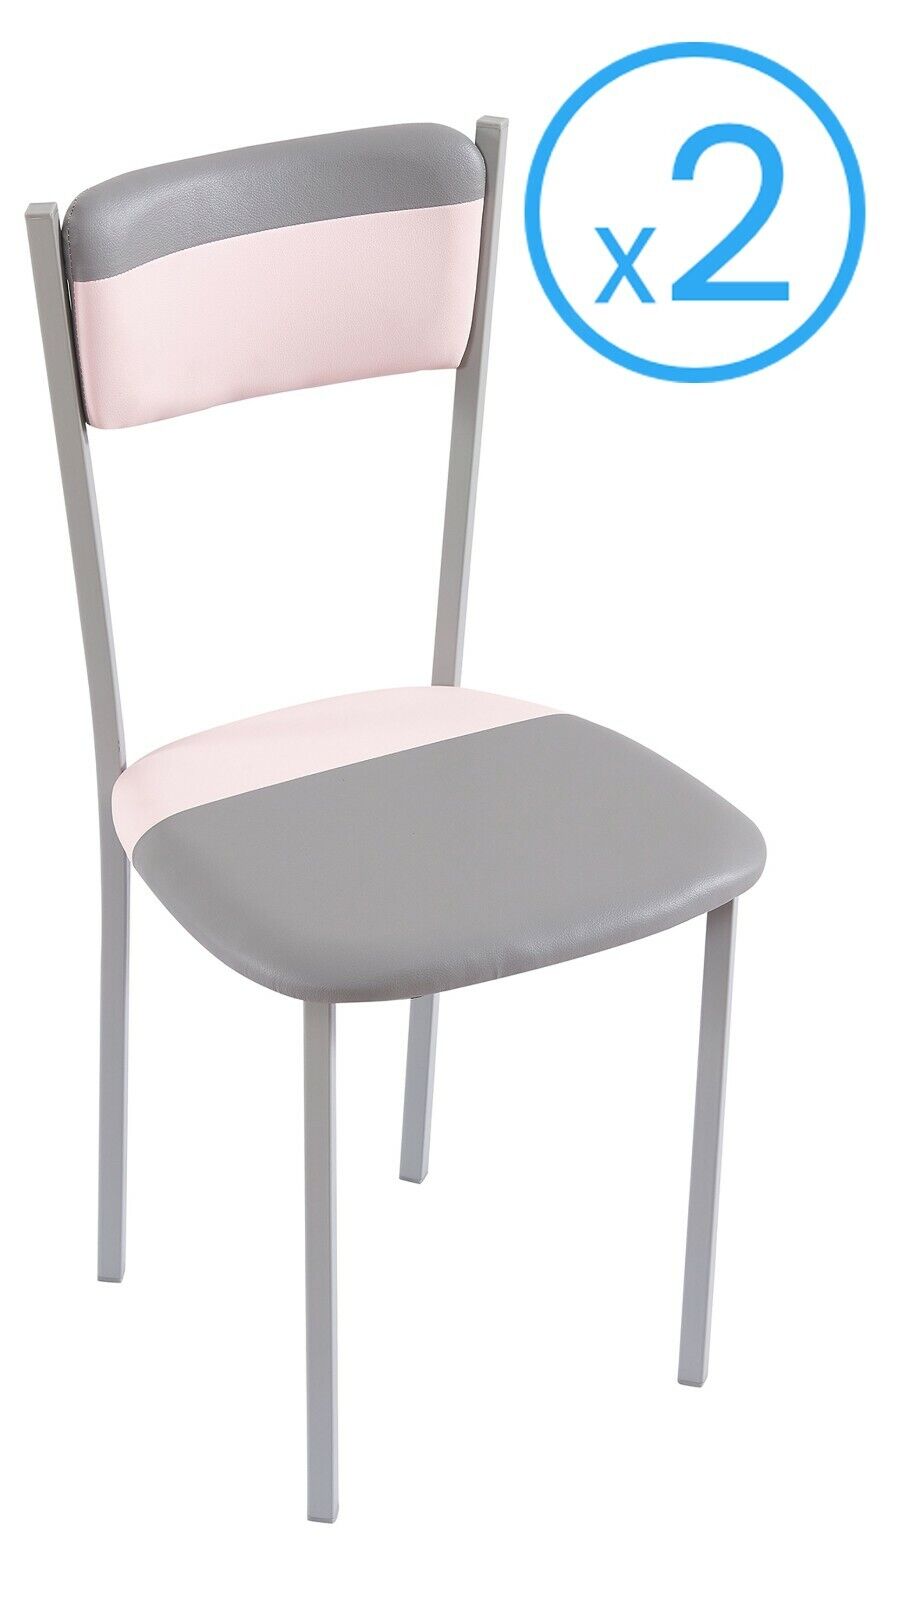 Pack 2 sillas de cocina modernas en color gris y rosa